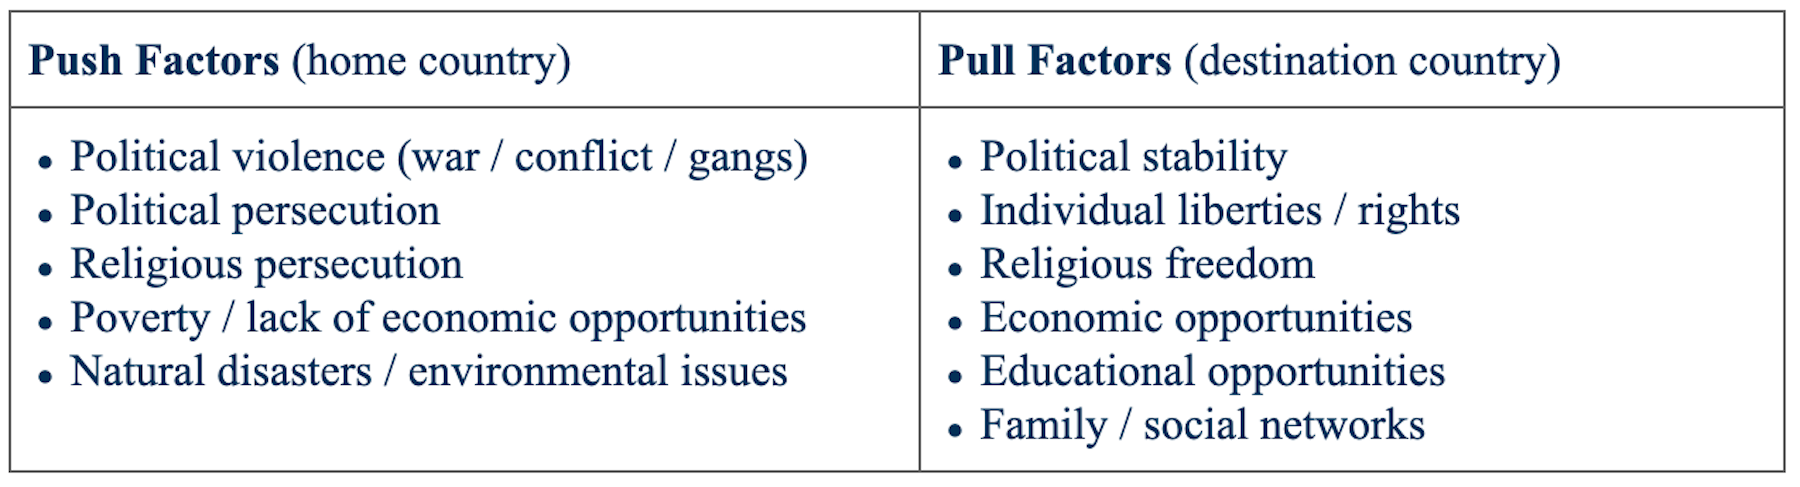 economic pull factors